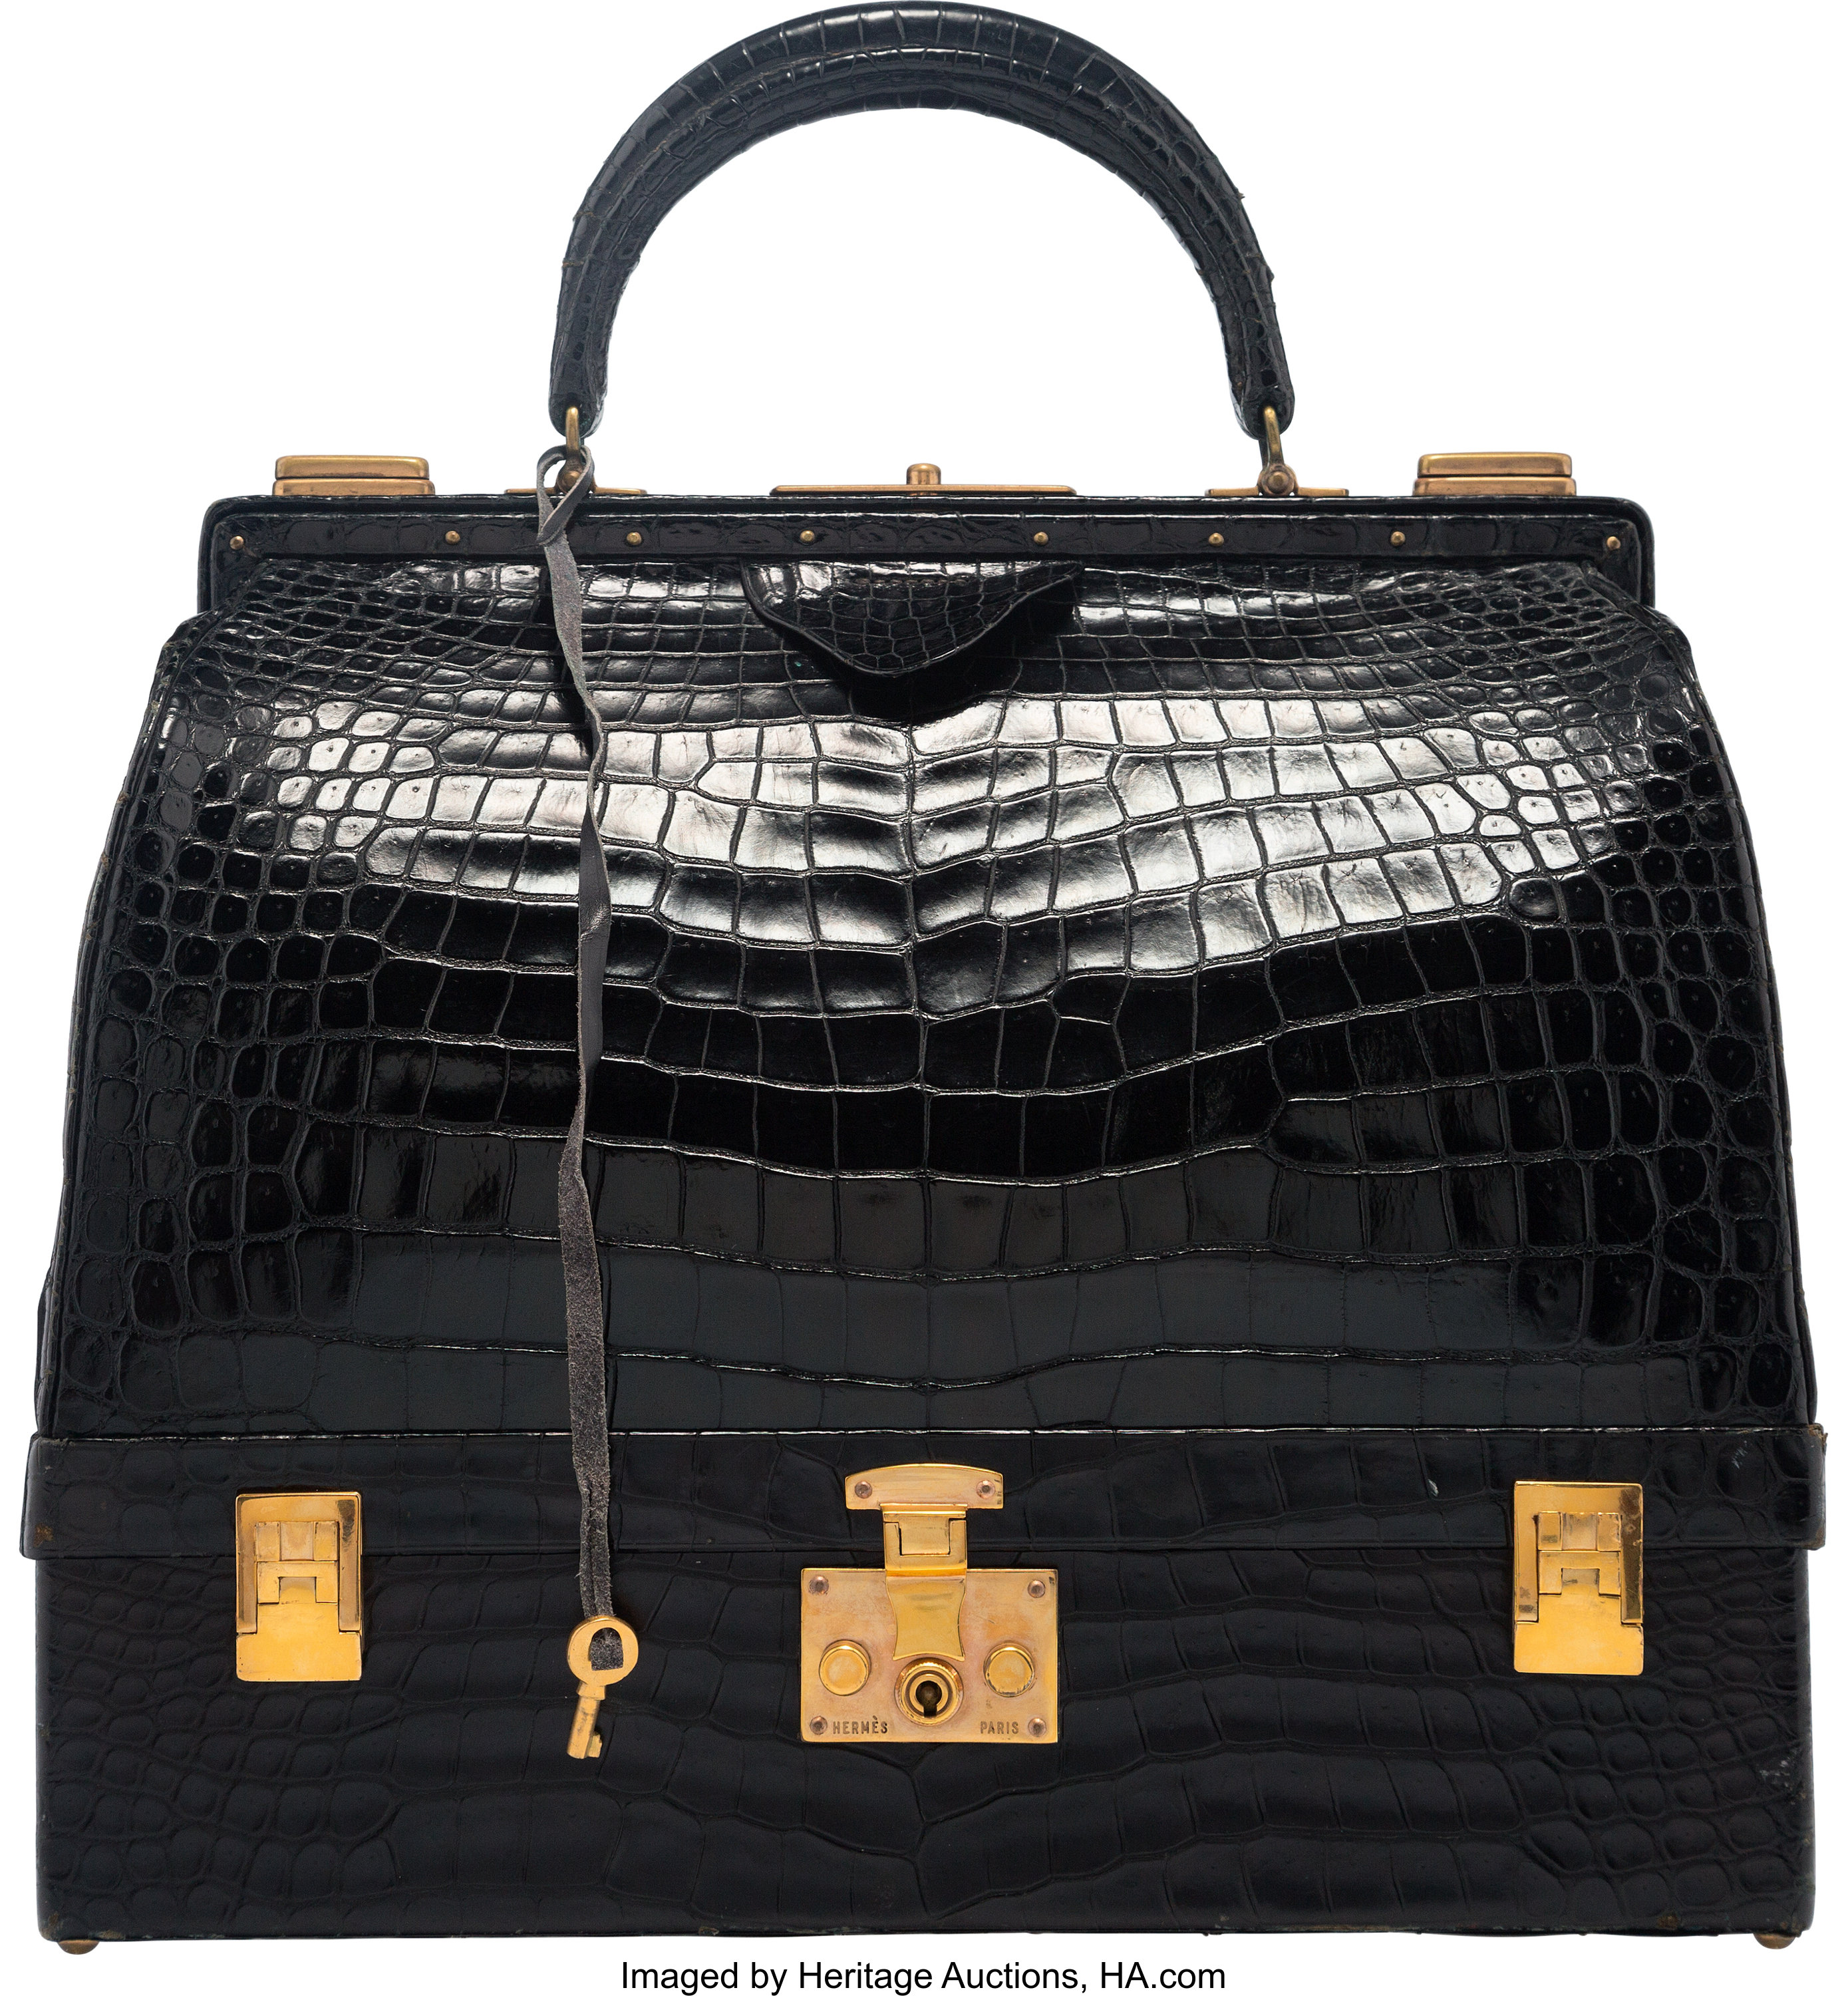 Black Bag Sac Mallette Vintage Crocodile FORTNUM & MASON 1950's Made in  France - Chelsea Vintage Couture